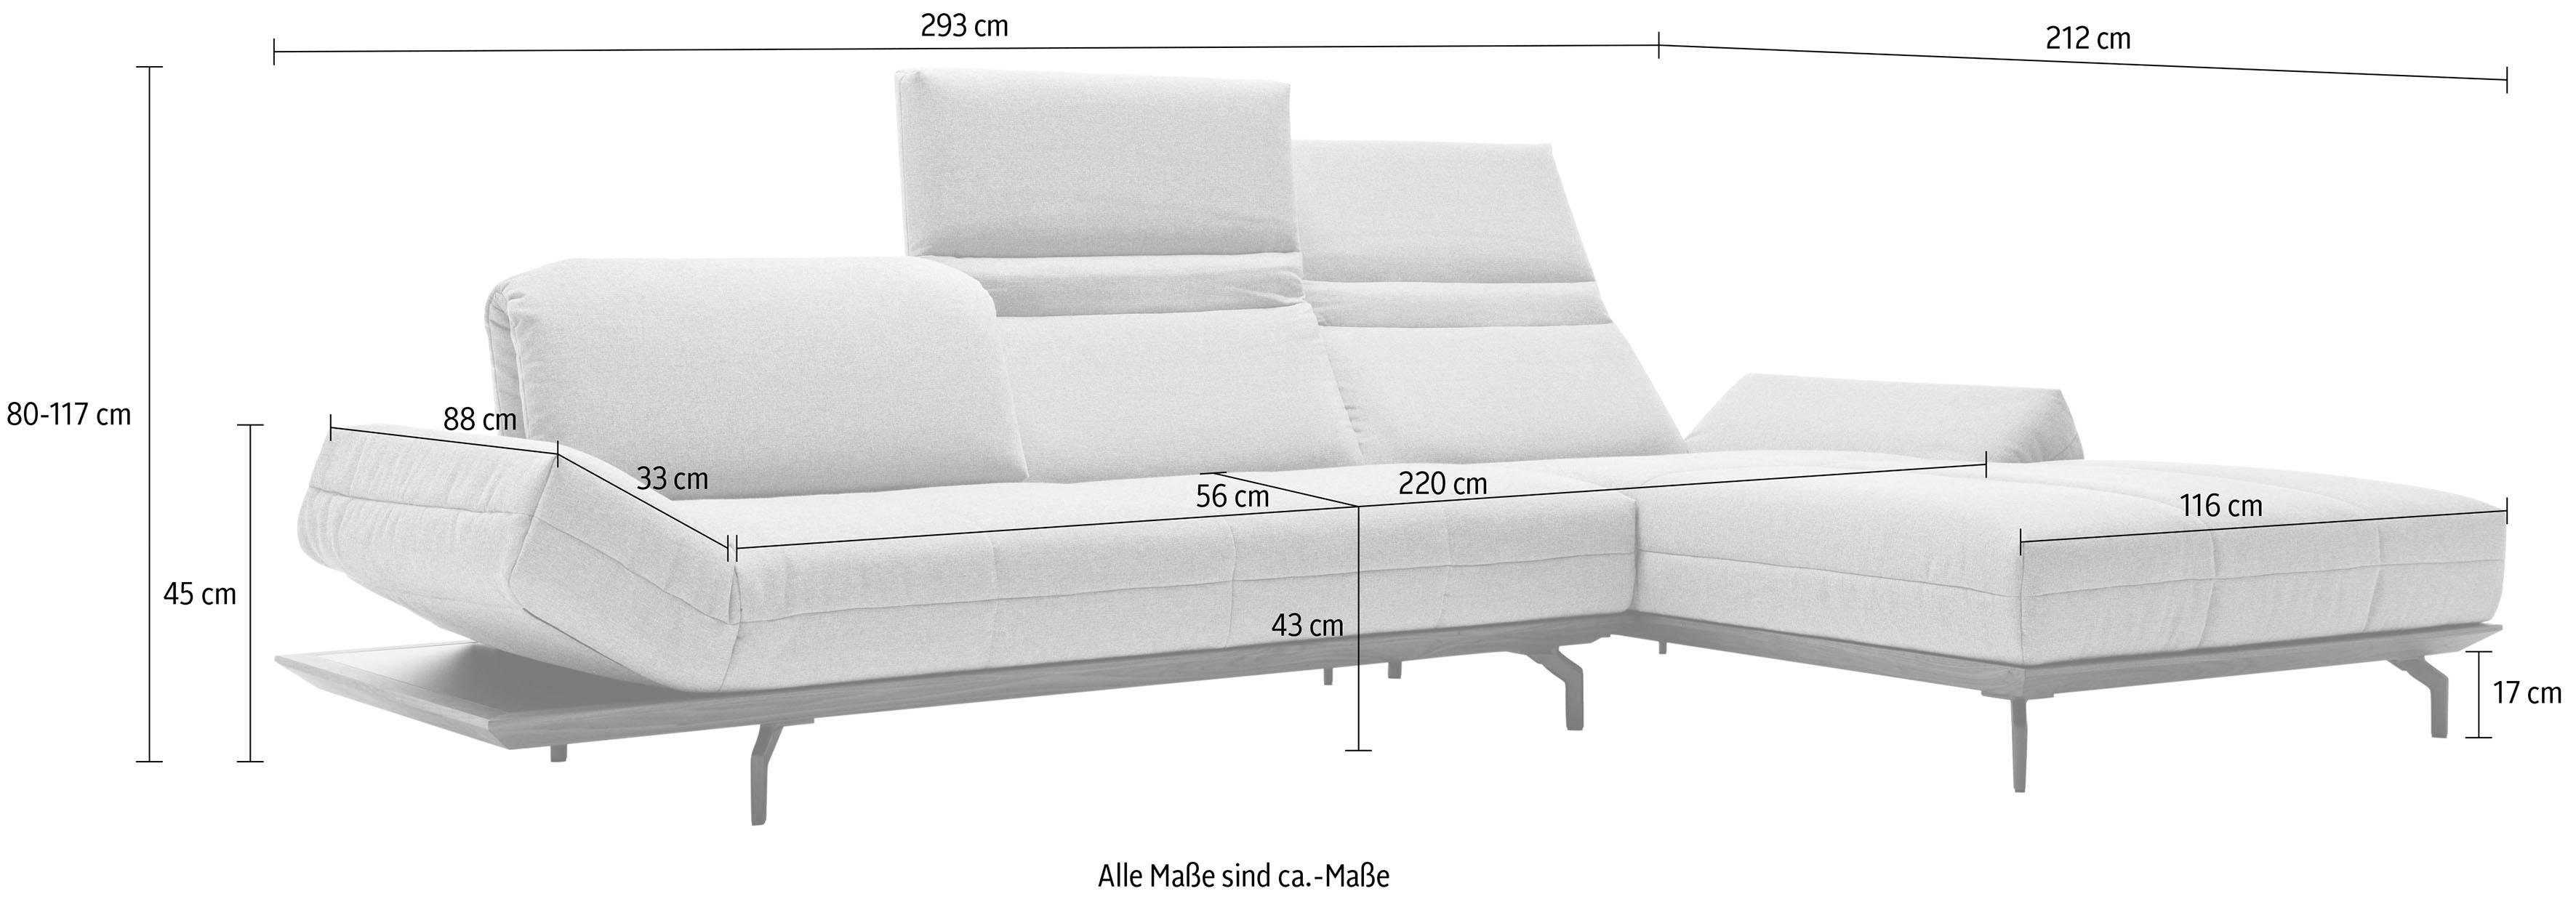 hülsta sofa Ecksofa hs.420, in Nußbaum, Natur cm in Breite 2 Eiche oder Holzrahmen Qualitäten, 293